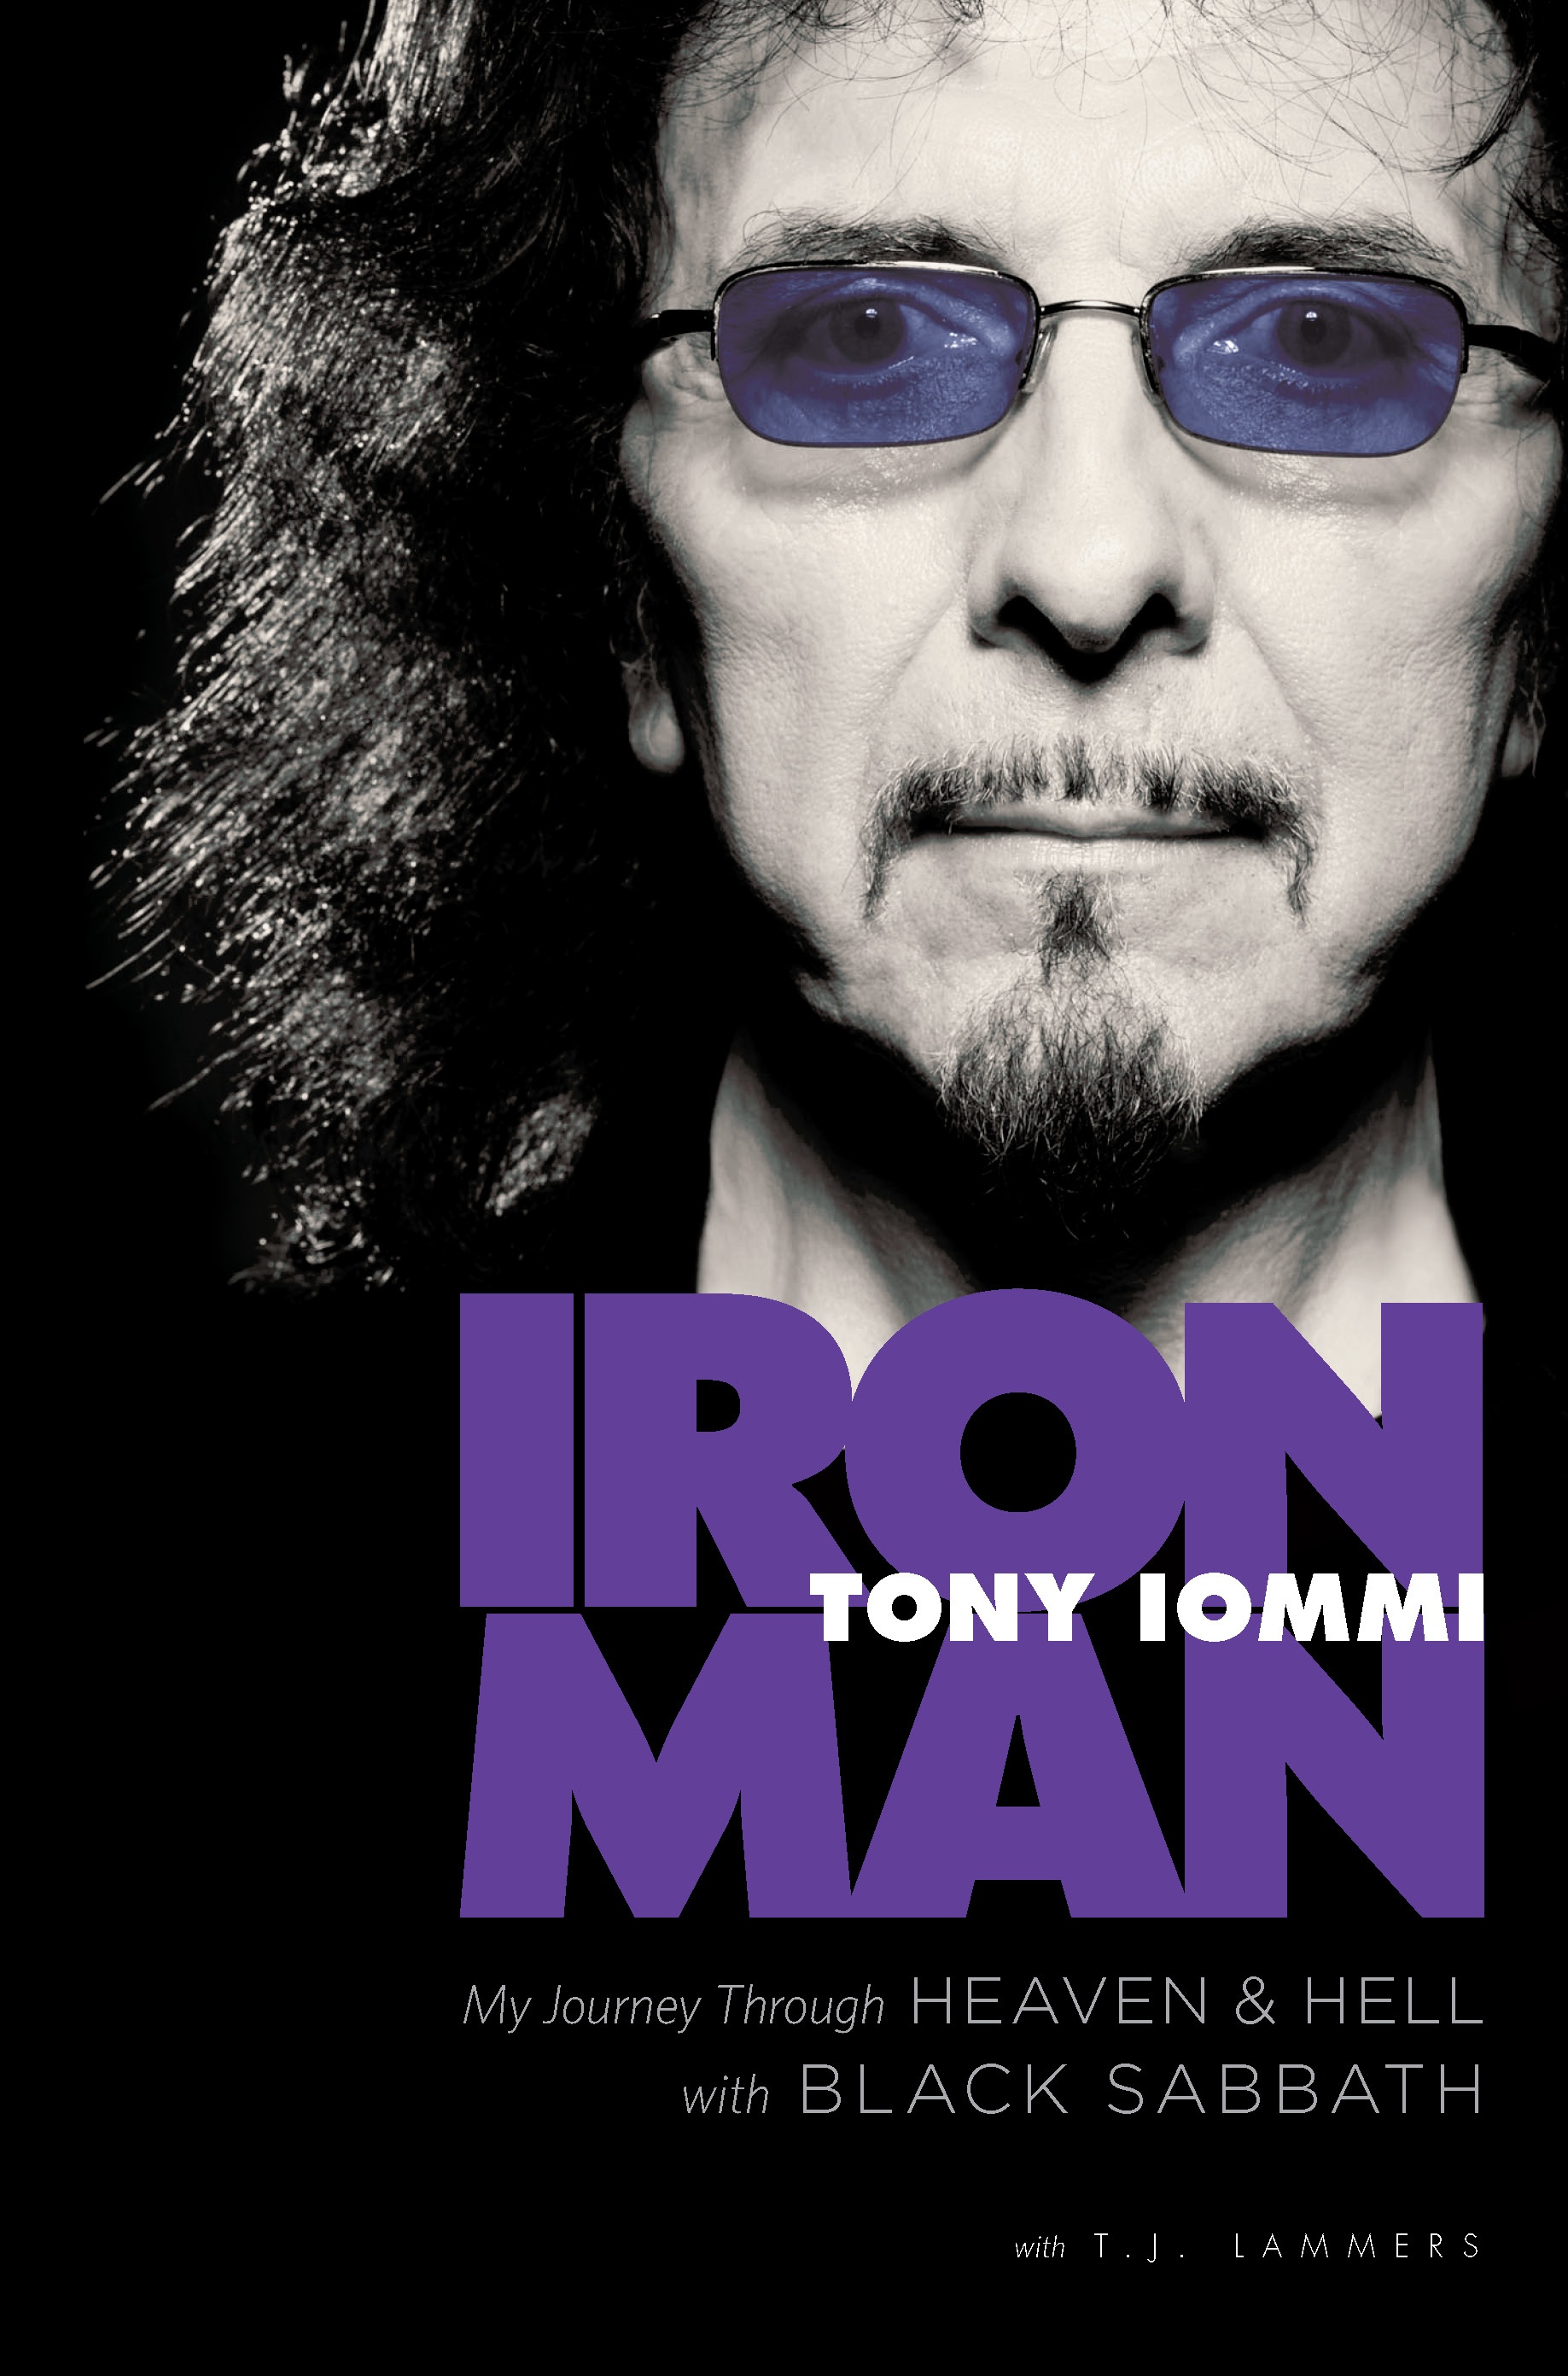 Iron man: Tony Iommi box cover